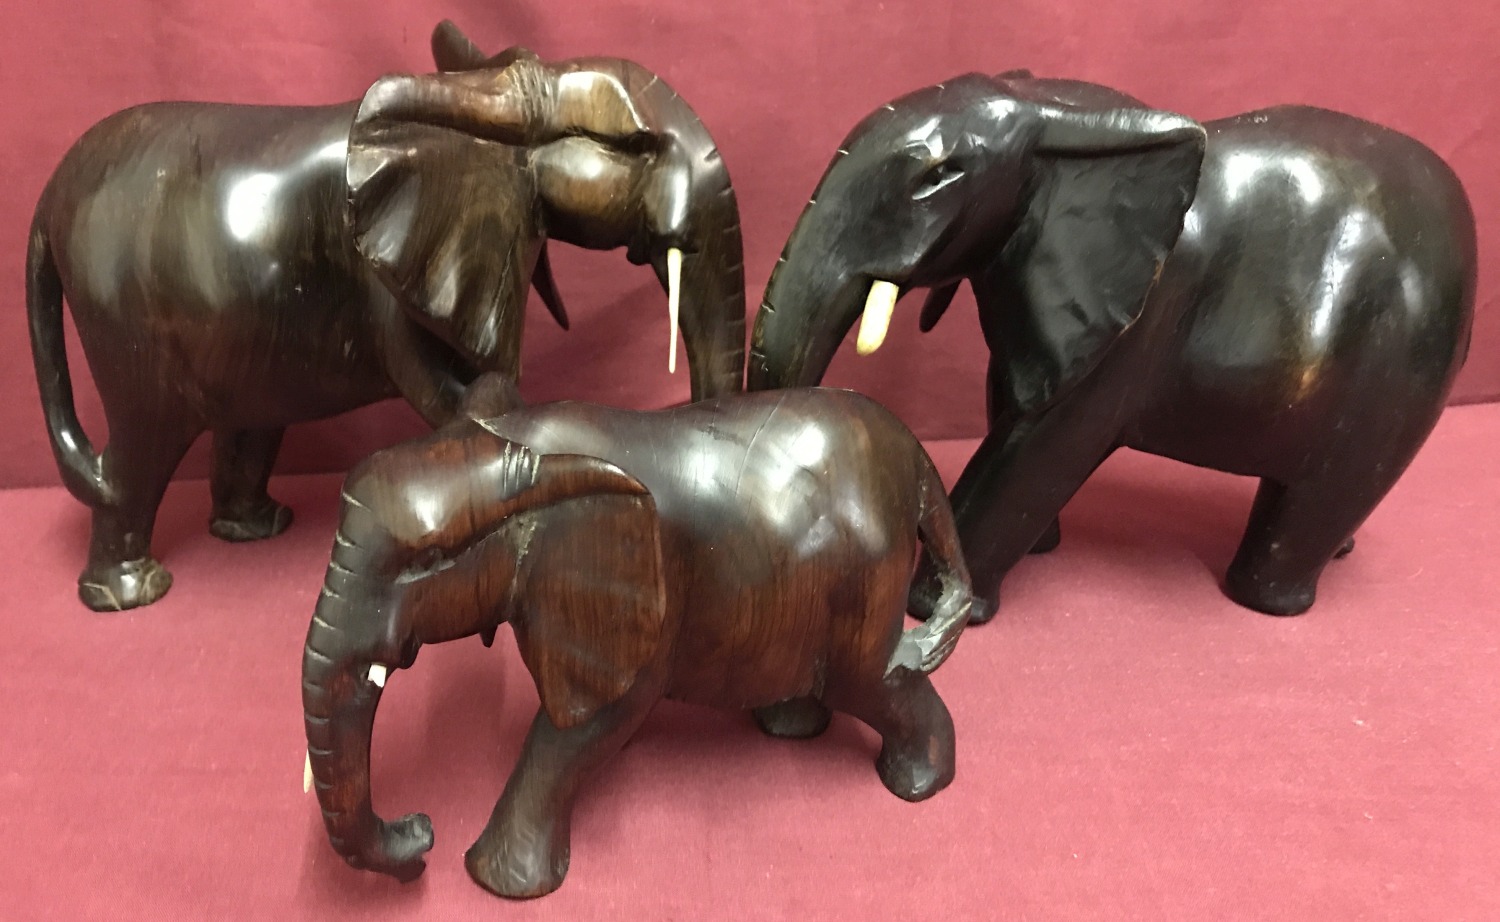 3 African hardwood elephant figures.